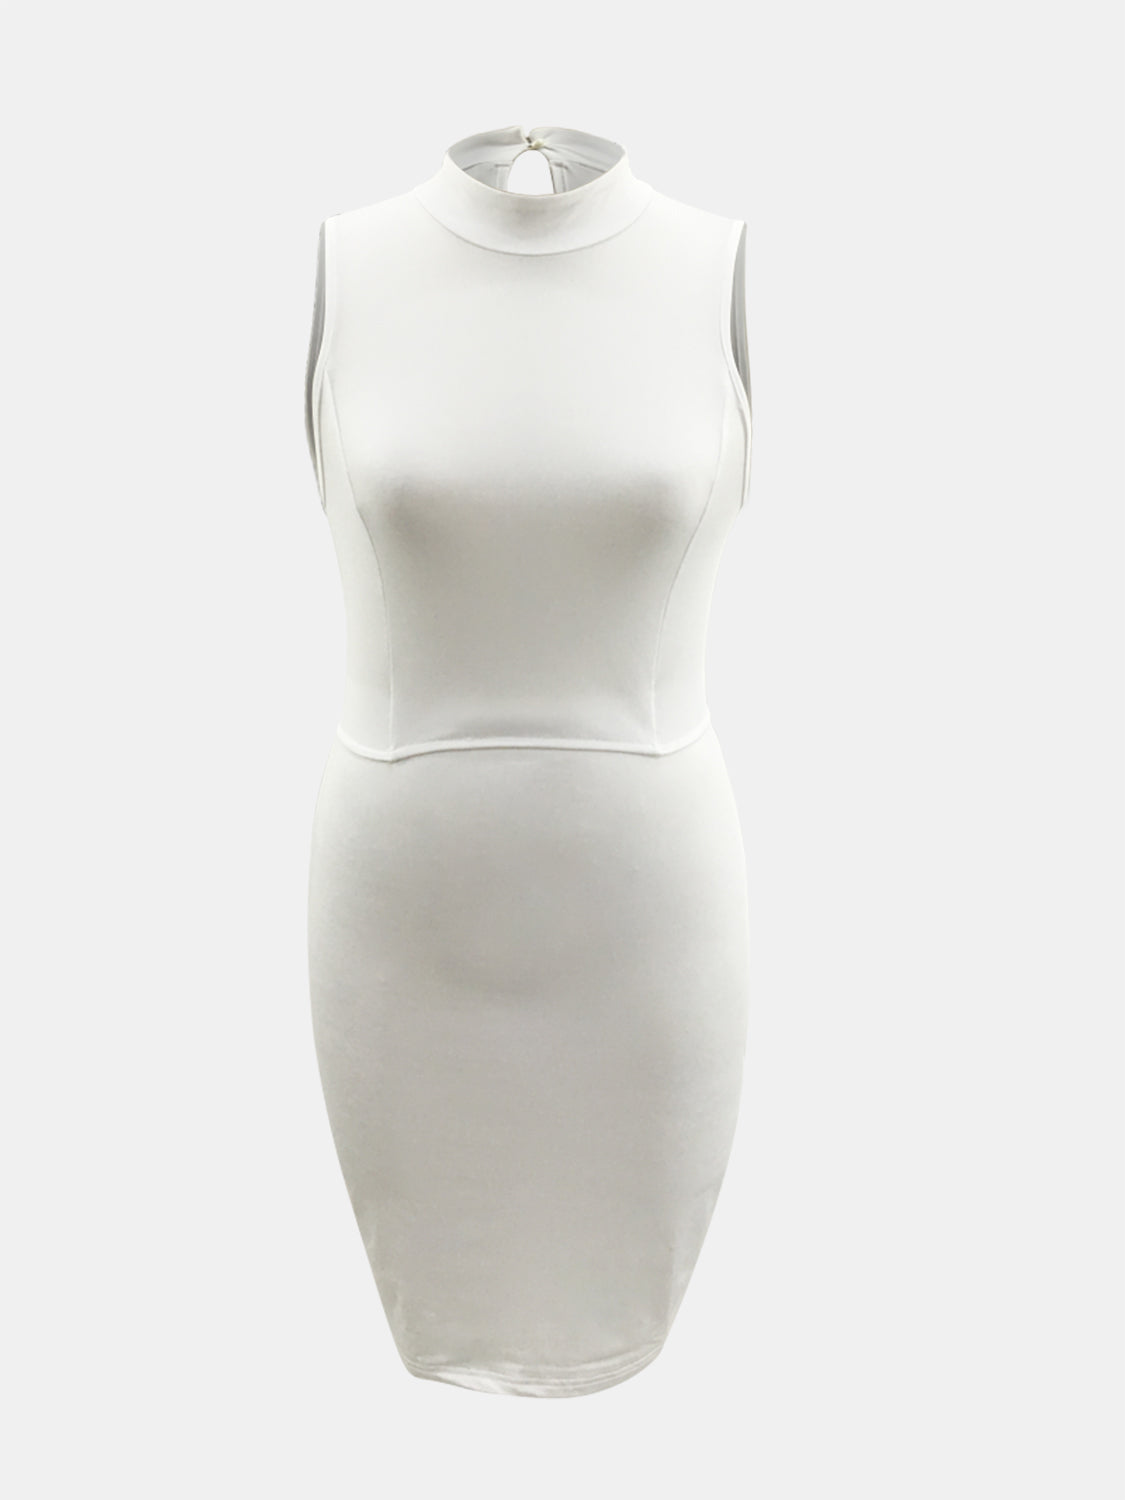 Plus Size Cutout Scoop Neck Sleeveless Dress – KesleyBoutique